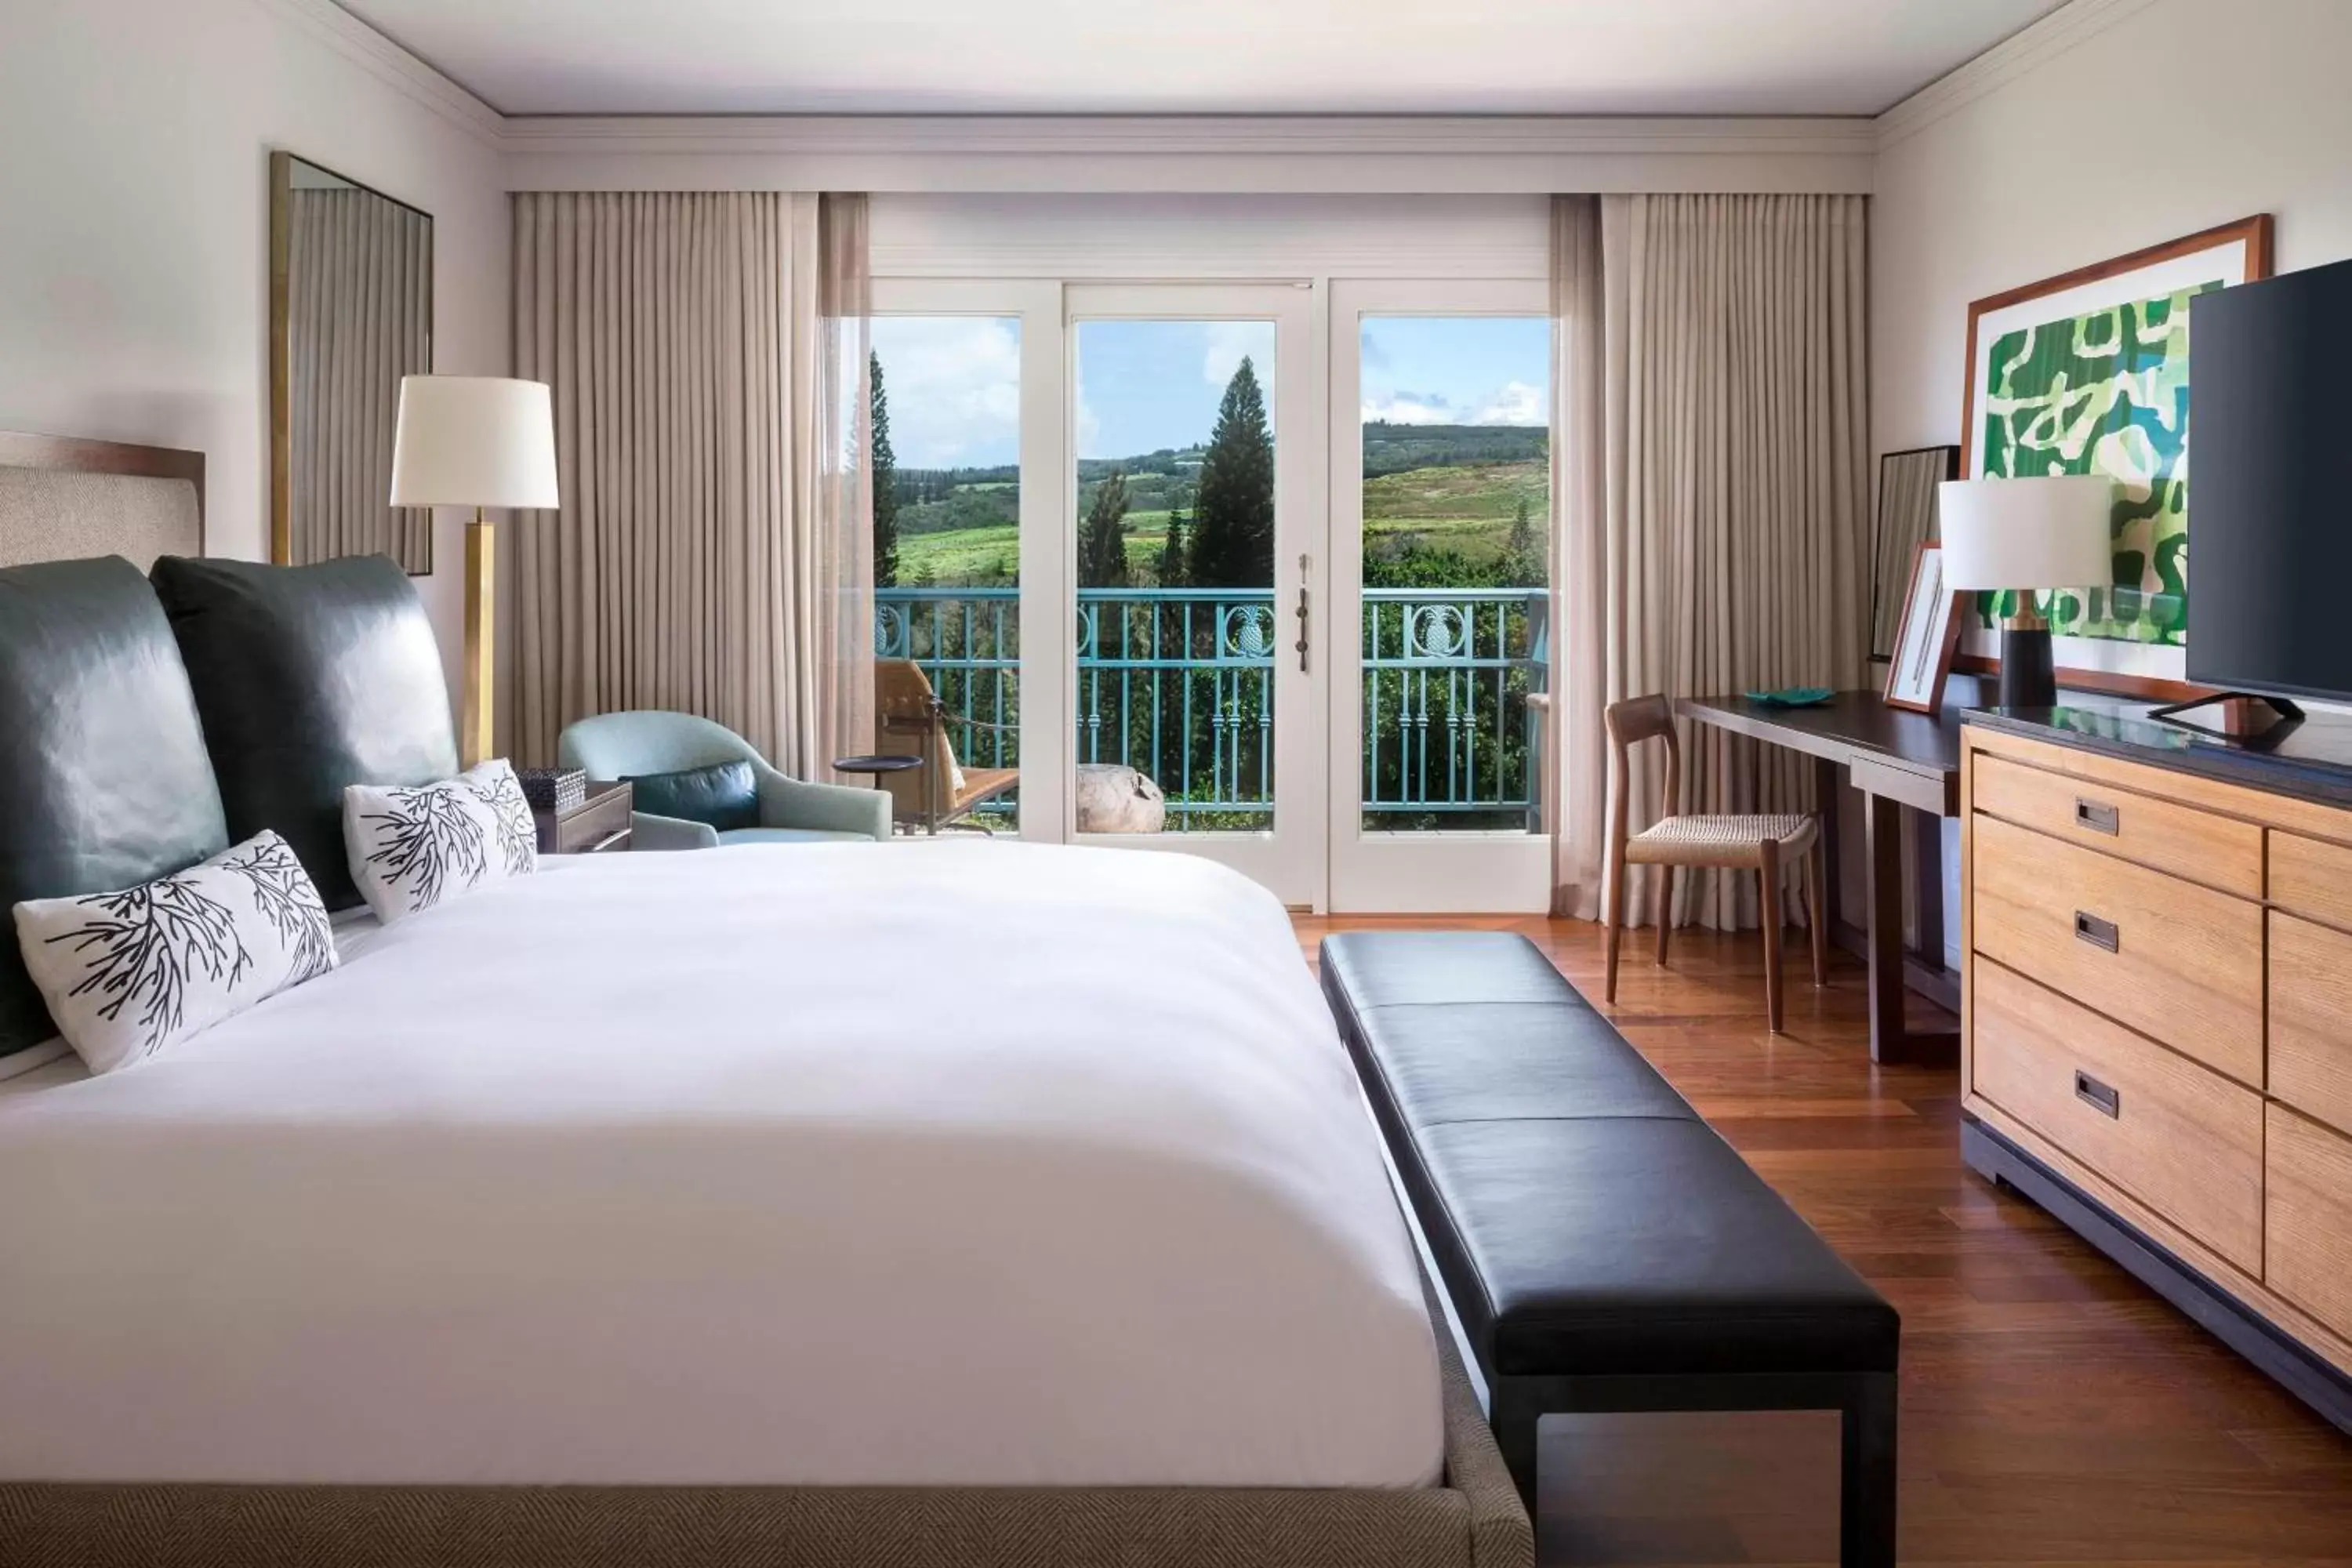 Photo of the whole room in The Ritz-Carlton Maui, Kapalua